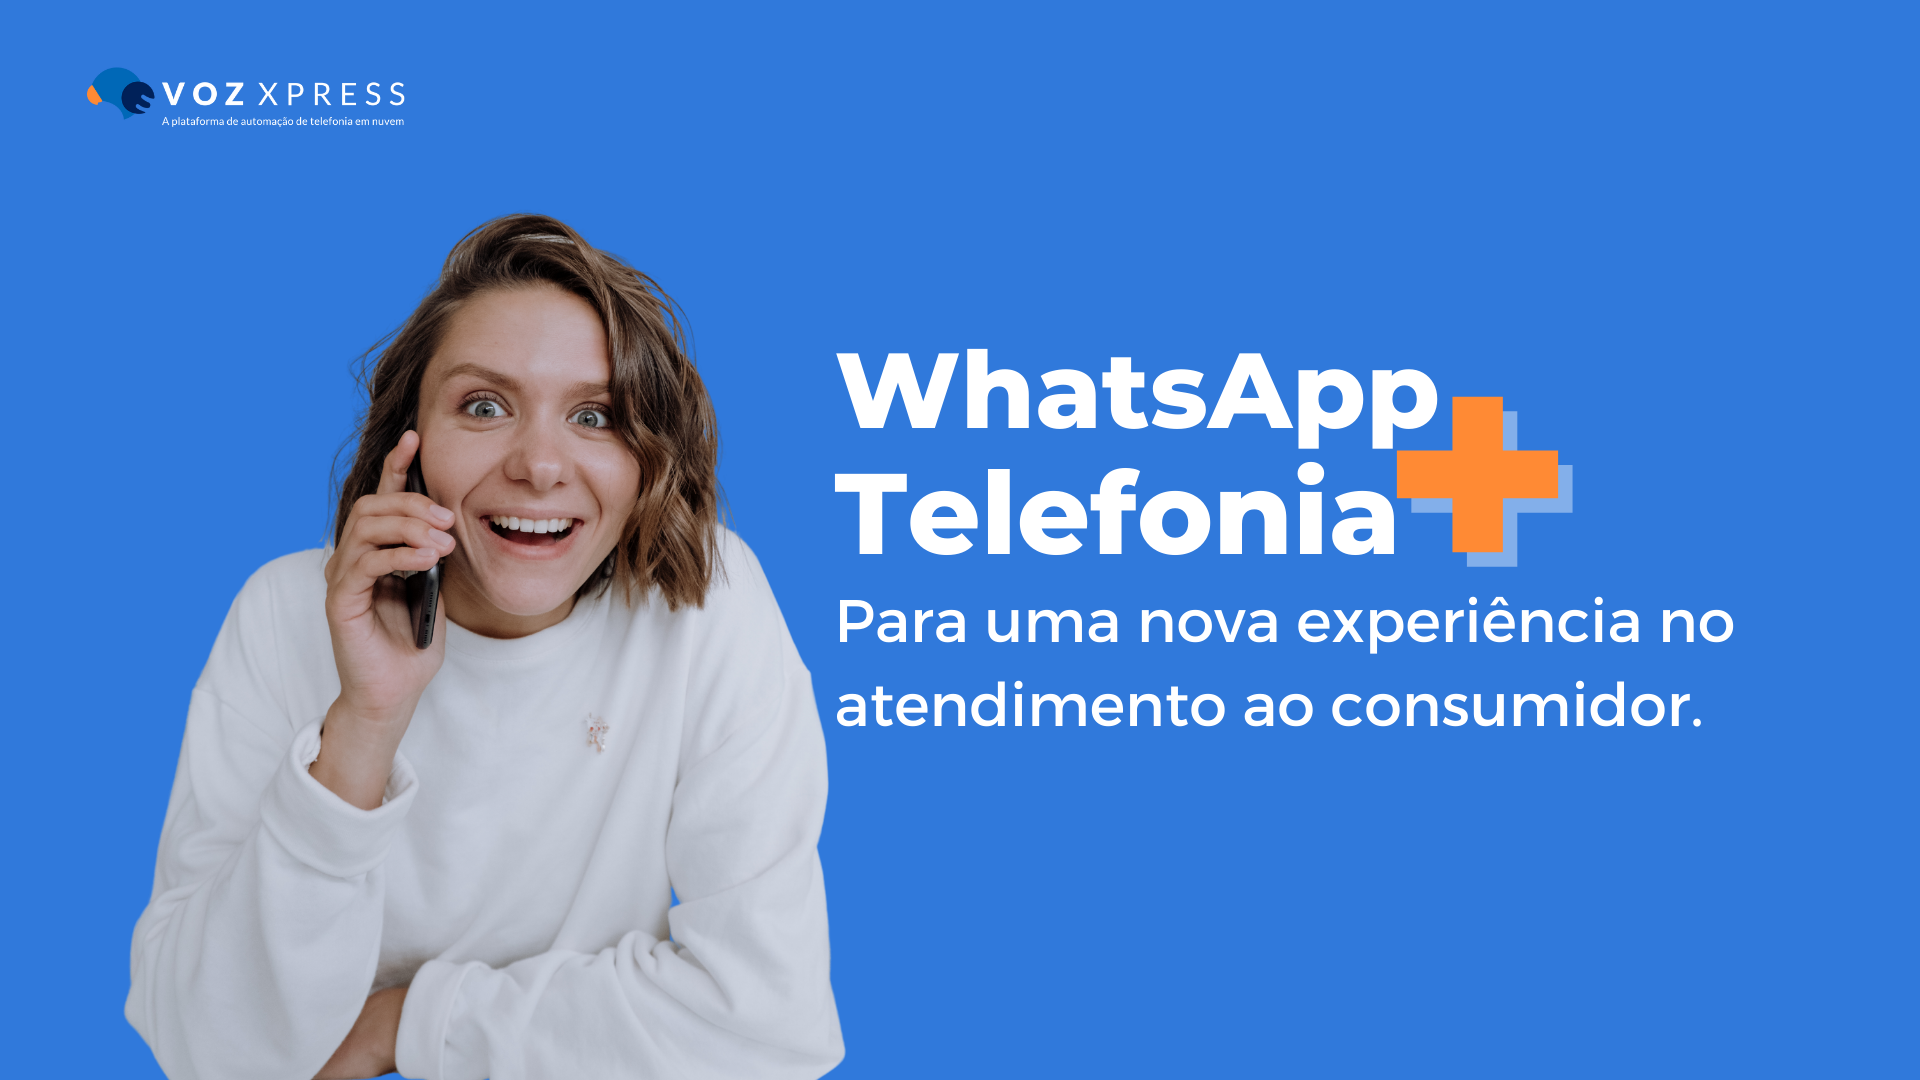 Telefone e WhatsApp: como aliar dois dos principais canais de atendimento para oferecer uma nova experiência aos clientes